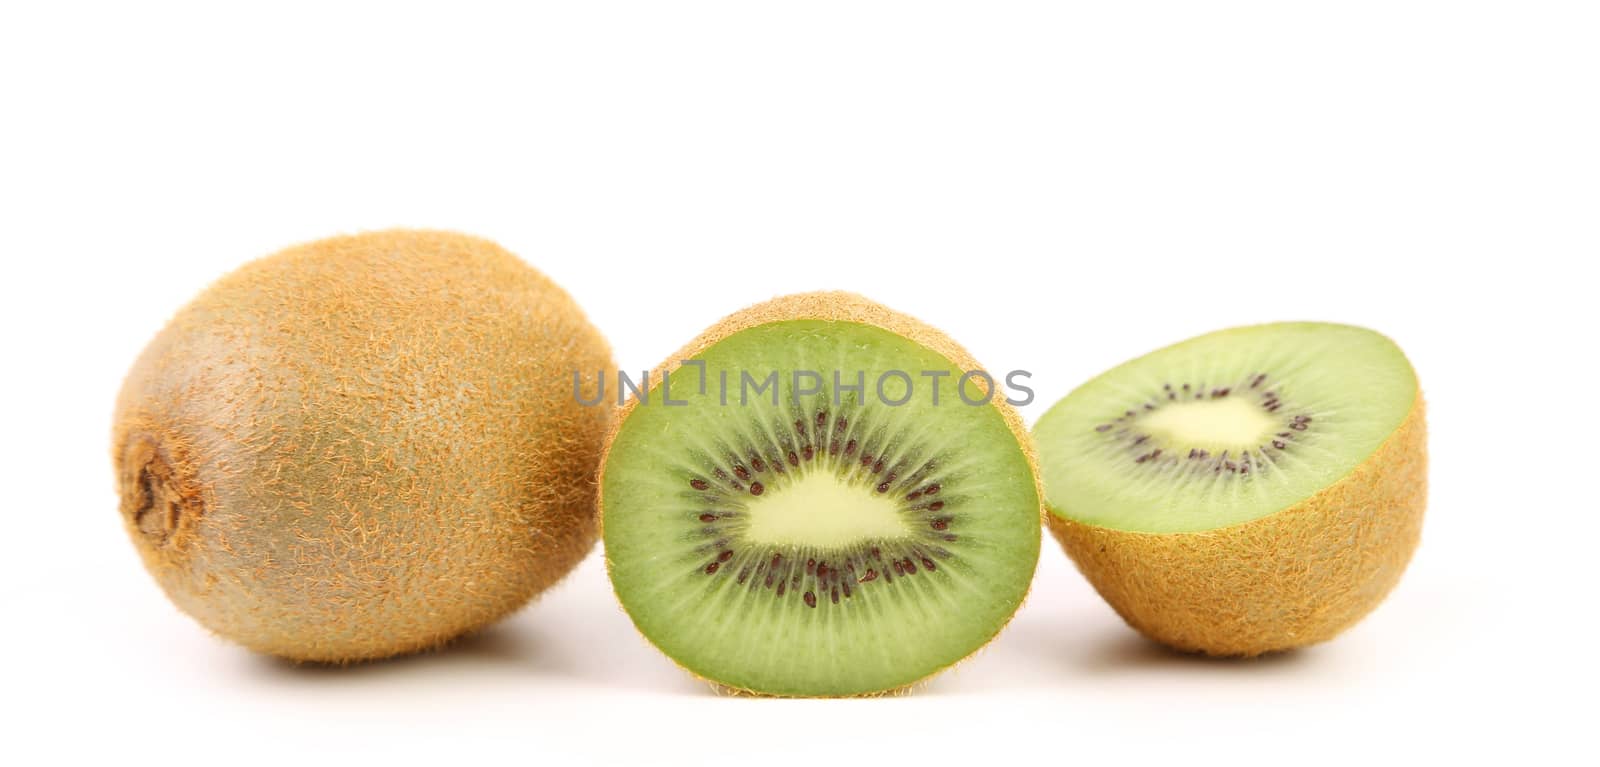 Kiwi fruits isolated on white background by indigolotos